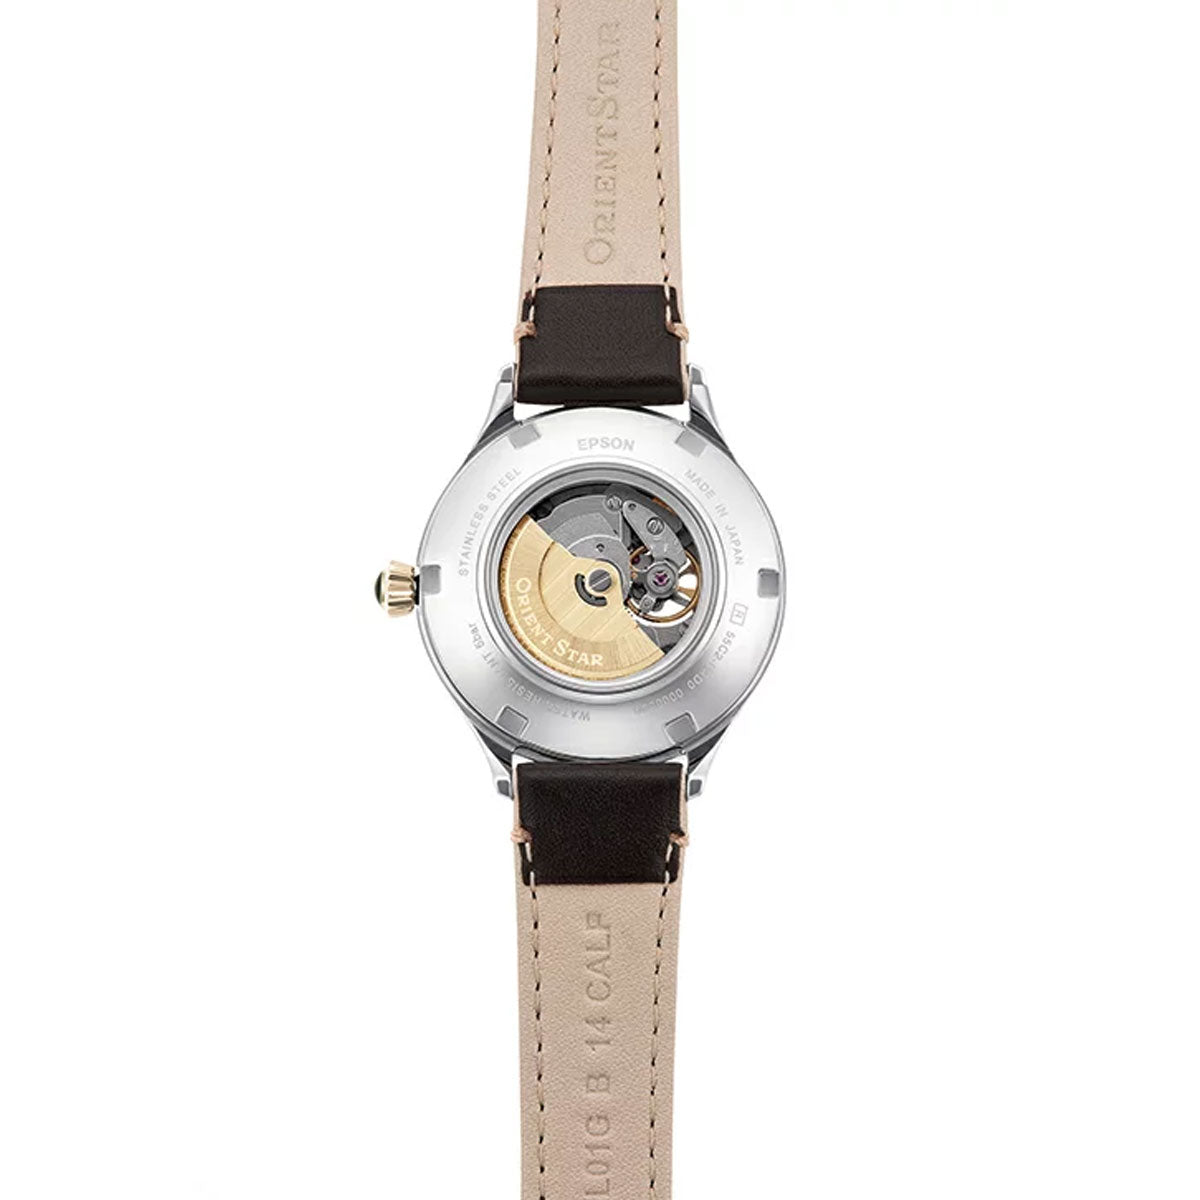 オリエントスター ORIENT STAR 腕時計 レディース 自動巻き 機械式 クラシック CLASSIC クラシックセミスケルトン RK-ND0010G